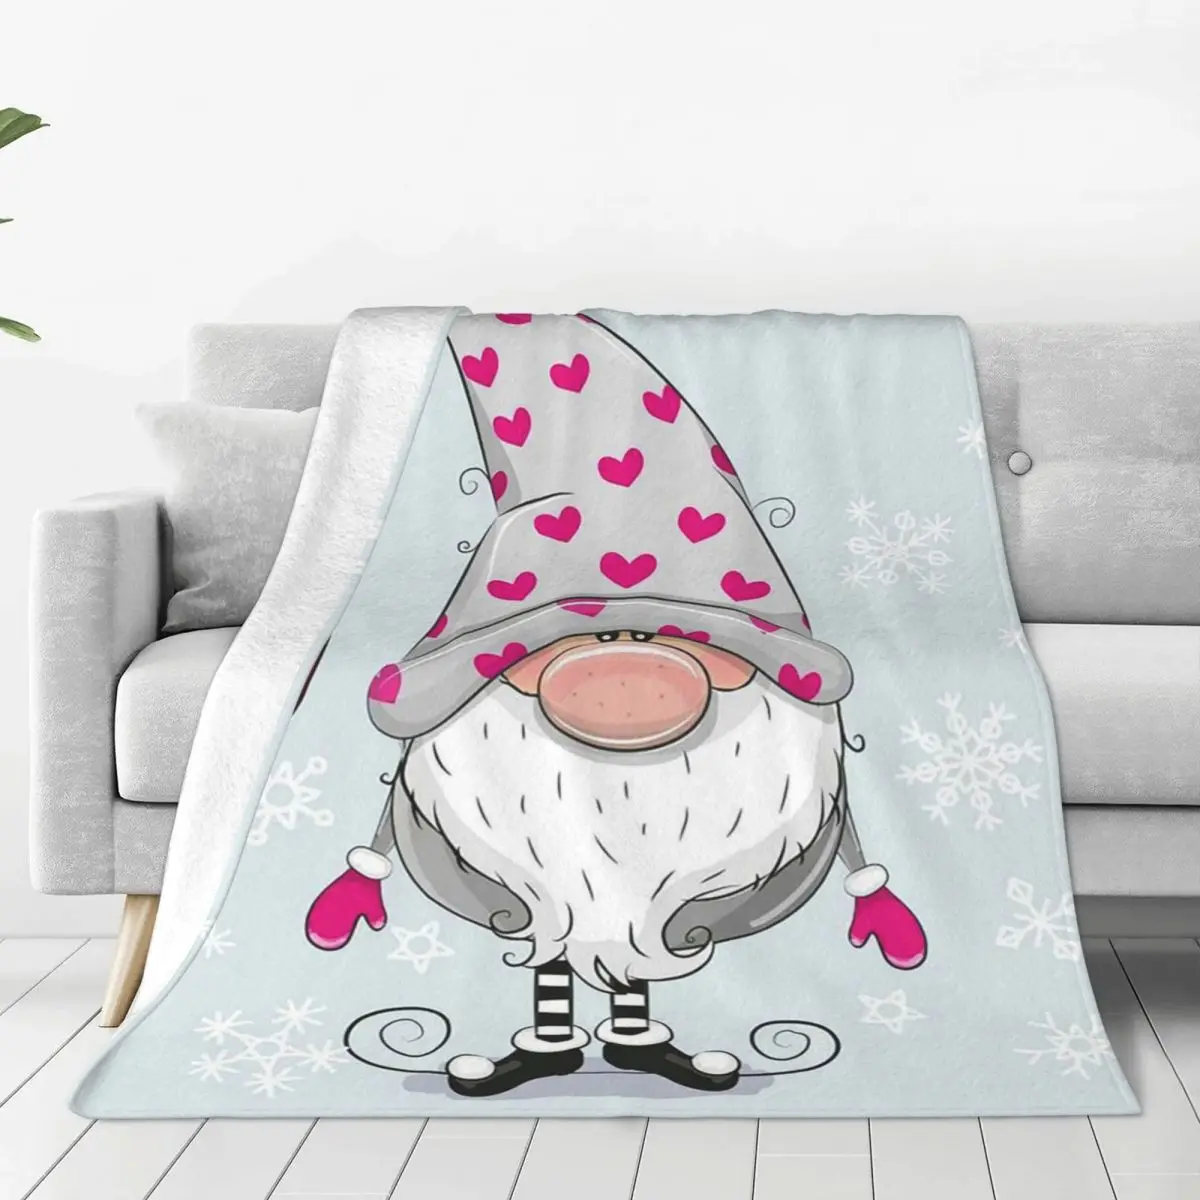 https://ae01.alicdn.com/kf/S62f803b76358470988a7da0c3f06af33e/Christmas-Kawaii-Gnome-Blanket-Velvet-Spring-Autumn-Heart-New-Year-Portable-Super-Warm-Throw-Blanket-for.jpg